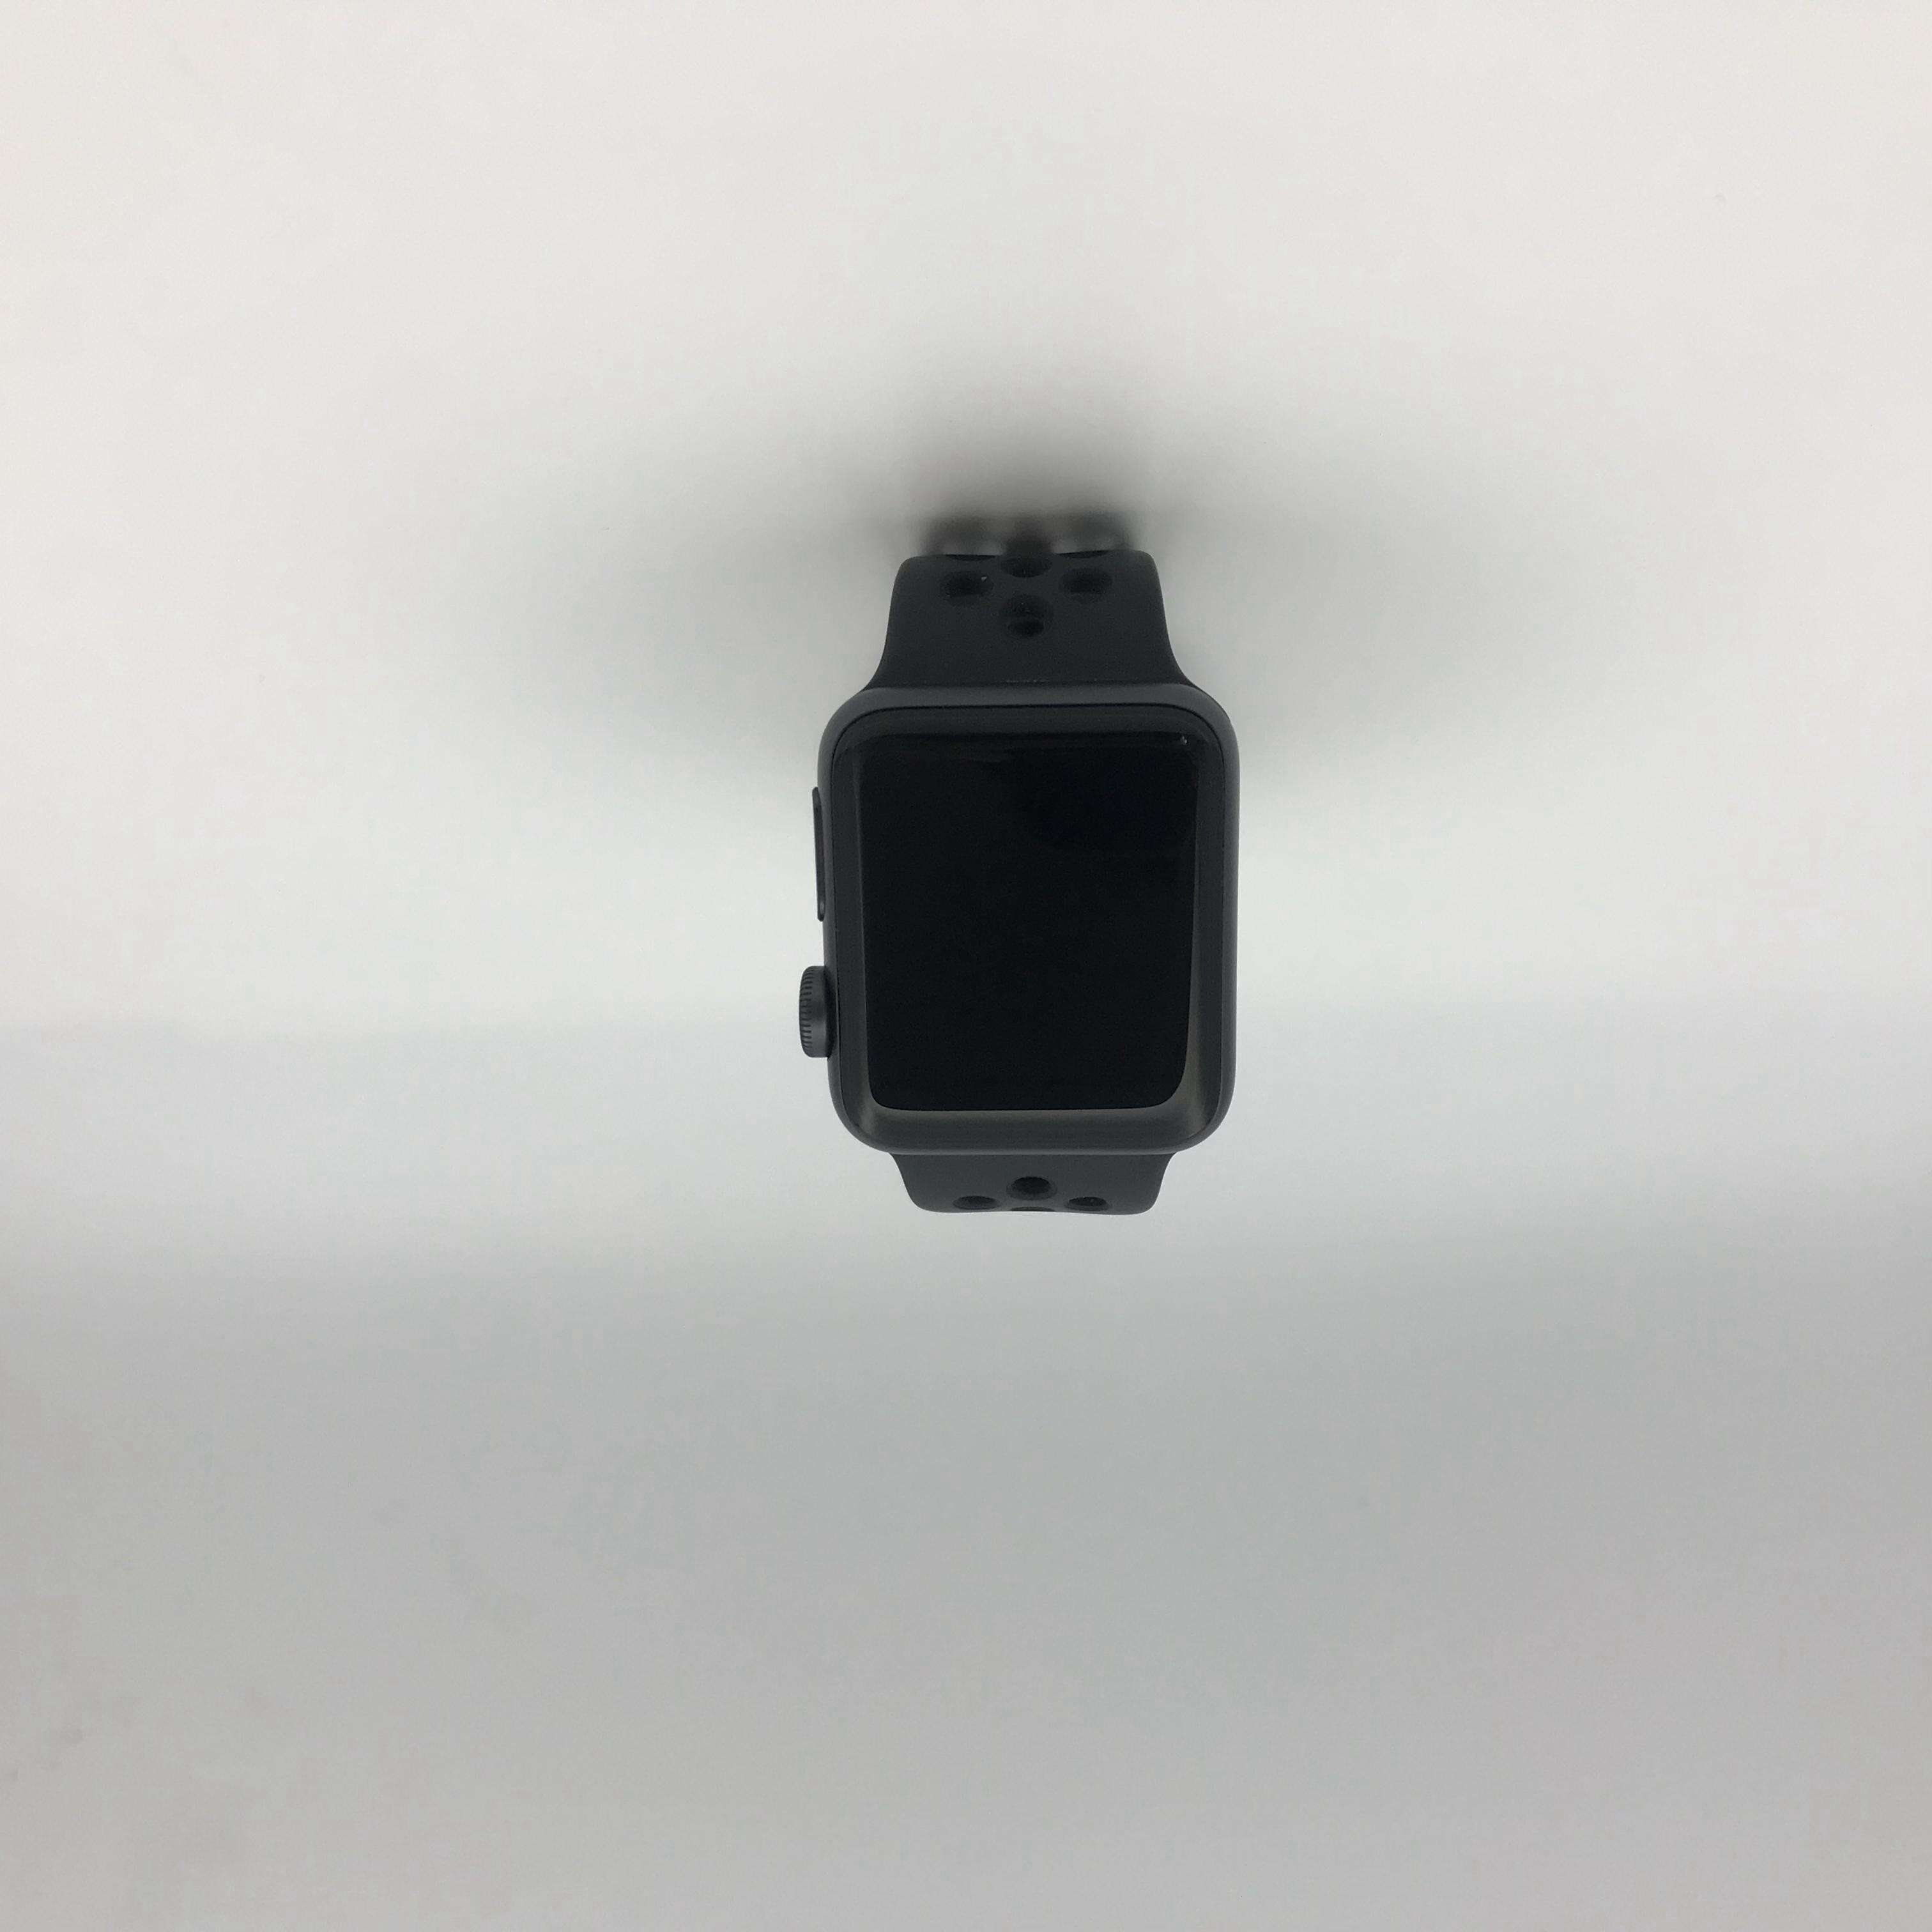 Apple Watch Series 3 铝金属表壳 38MM 国行蜂窝版